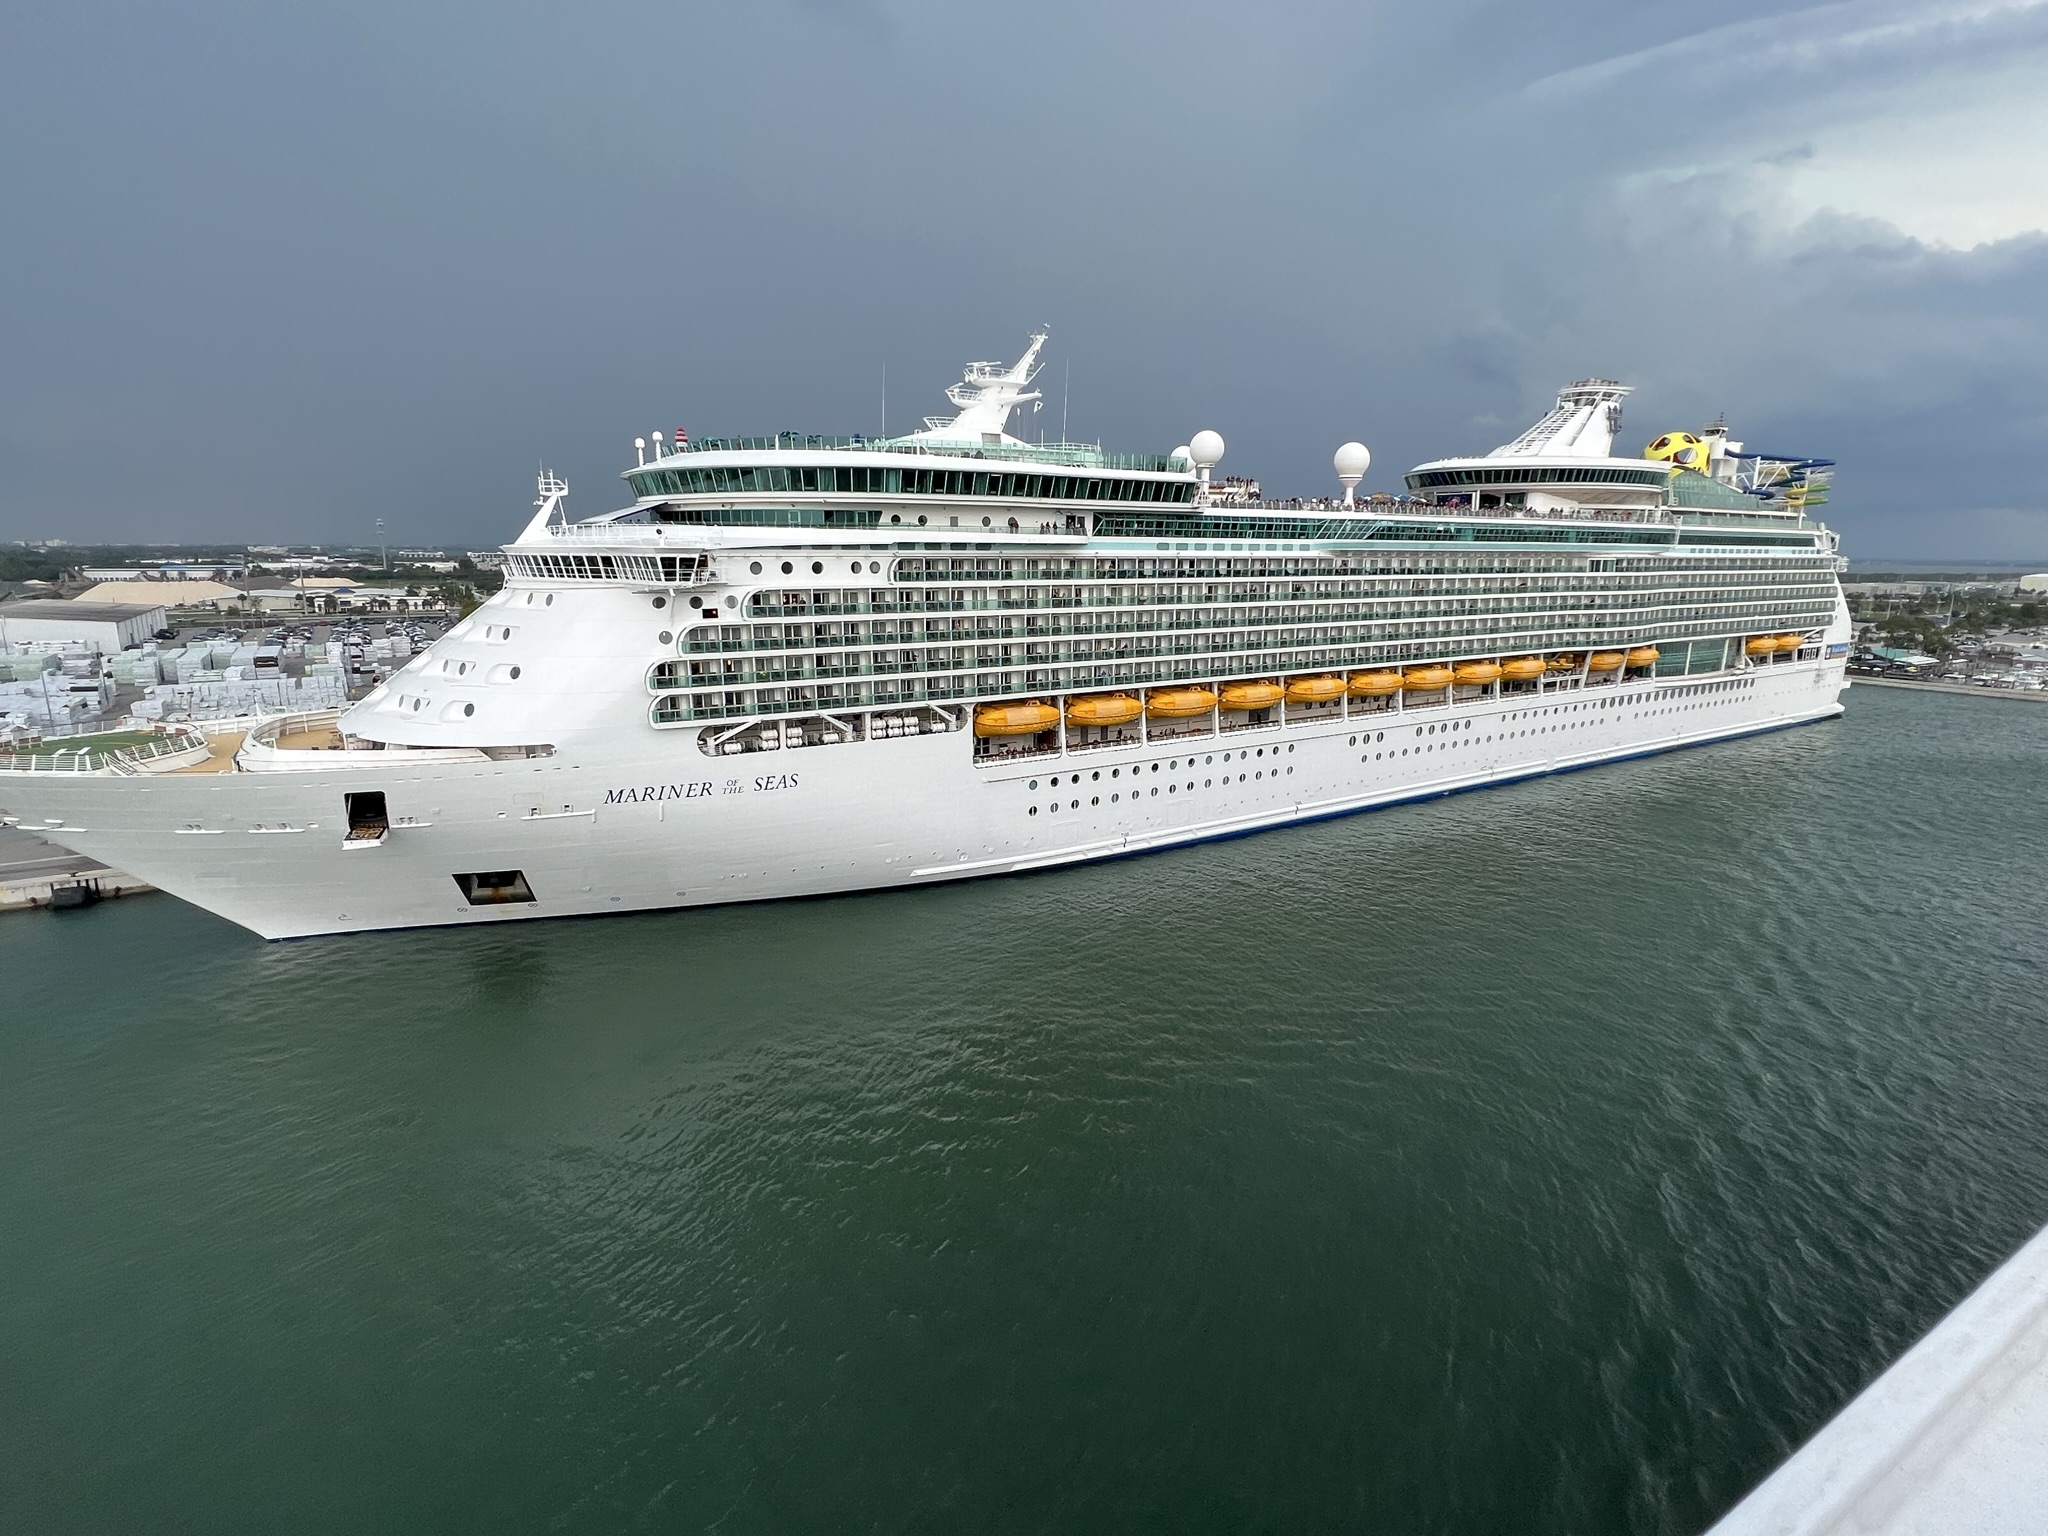 Cruise Ship Shorts - Royal Caribbean’s Mariner of the Seas Cruise Ship Docked at Port of Canaveral